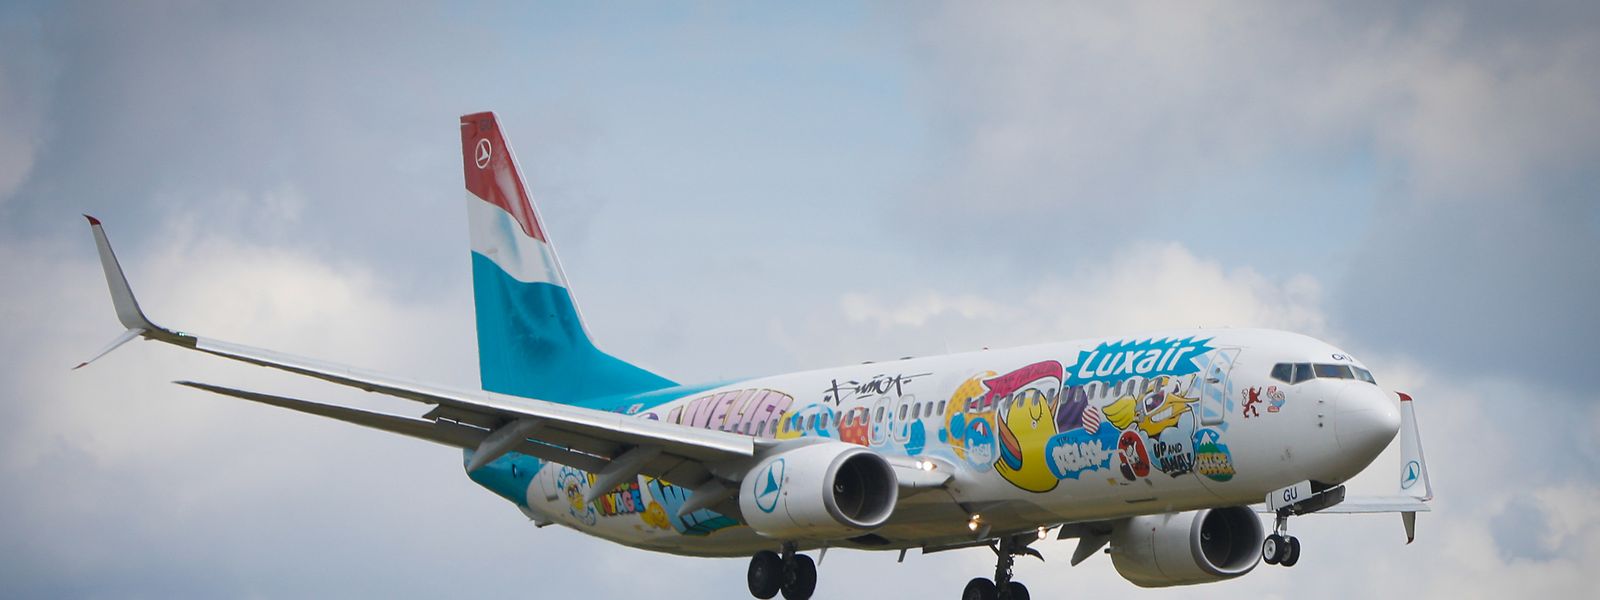 Die Luxair hat kürzlich zusätzliches Personal eingestellt, um Flugausfälle zu vermeiden. 